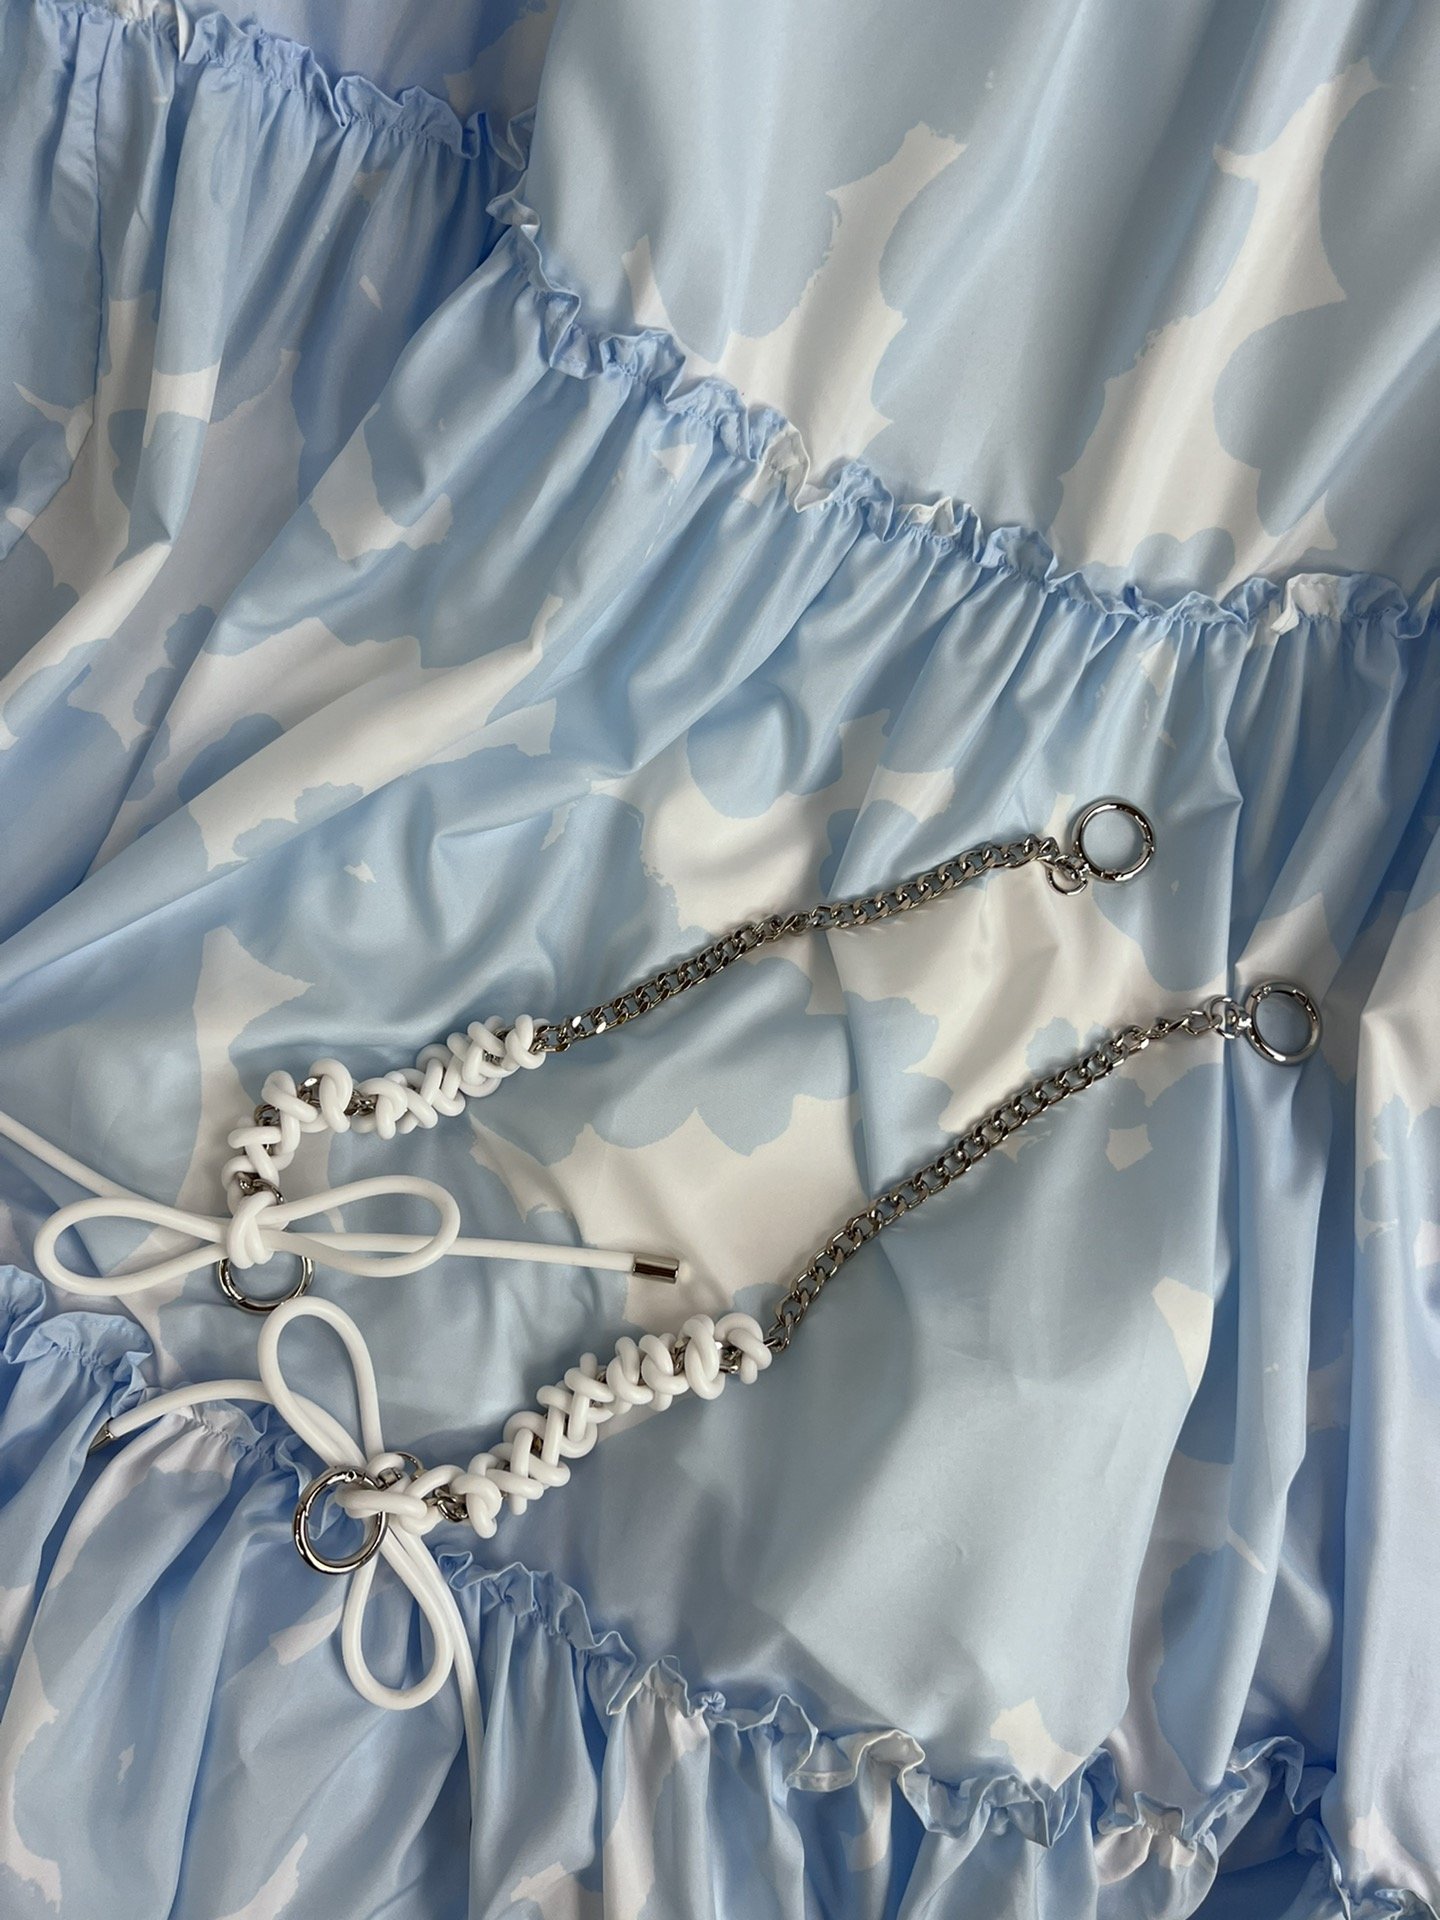 新款️！xiaoli24夏季新款！手工编织链条吊带连衣裙清新自然蓝白色搭配个性链条️可拆卸！遮肉显瘦度假